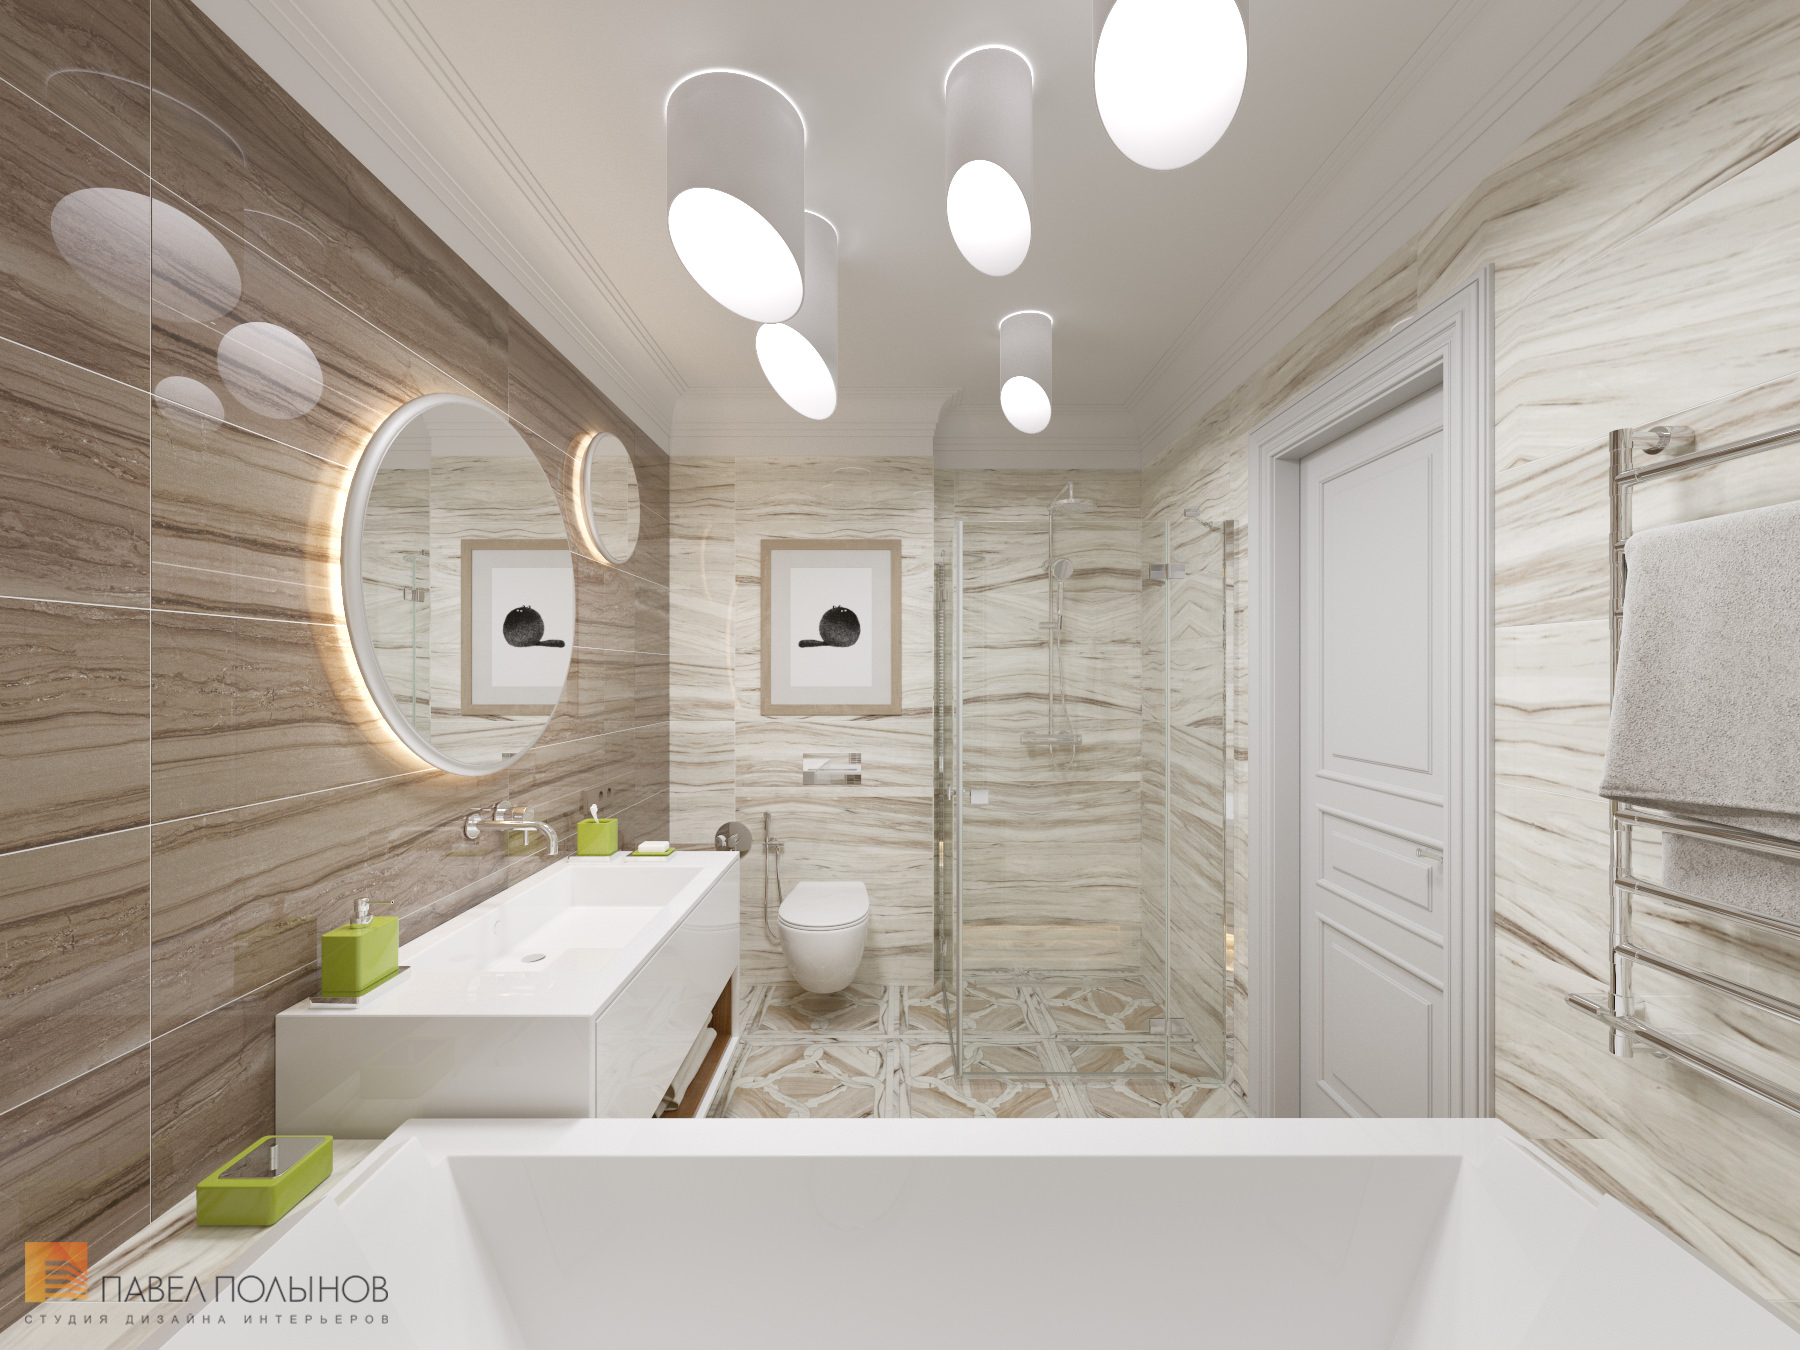 Фото ванная из проекта «Интерьер квартиры в стиле неоклассики, ЖК «Парадный квартал», 190 кв.м.»